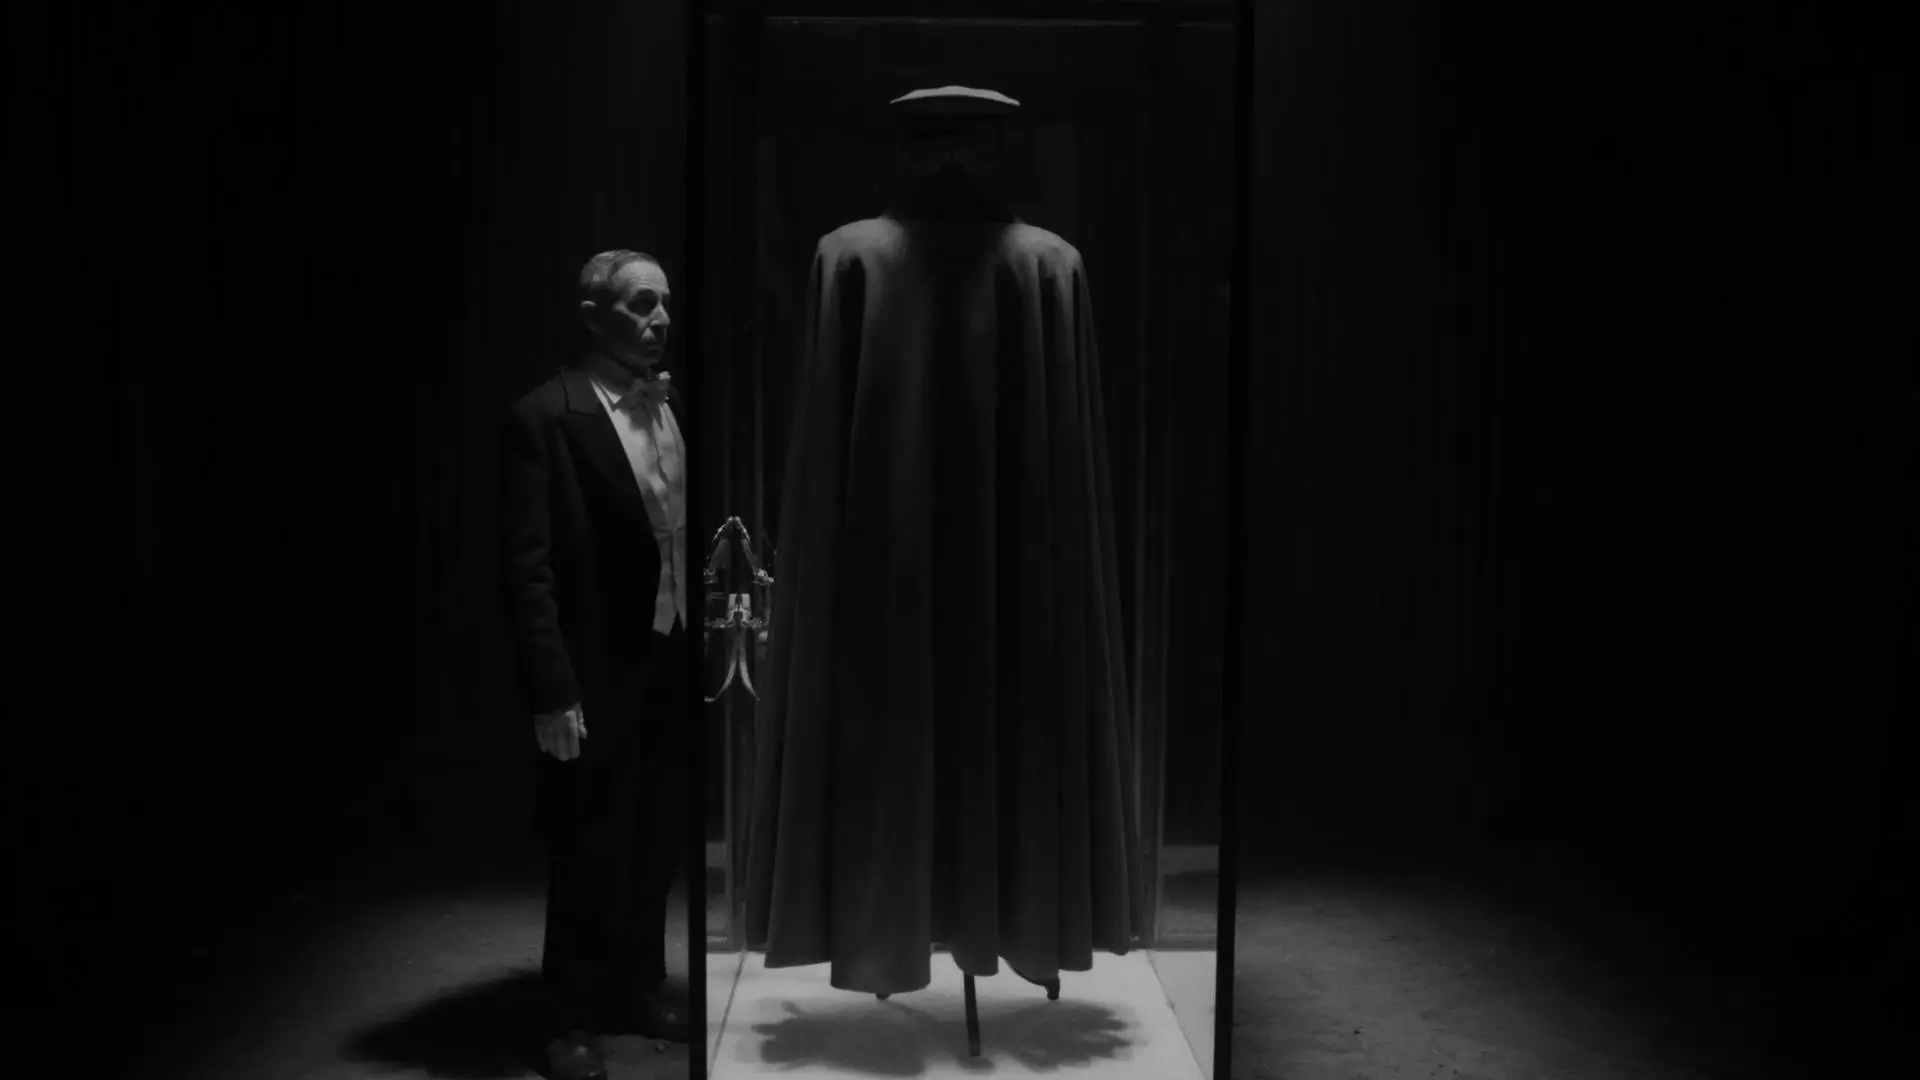 آلفردو کاسترو با لباس پیش‌خدمت کنار یک محفظه‌ی حاوی یک‌دست لباس و شنل نظامی ایستاده است در نمایی سیاه و سفید از فیلم کنت به کارگردانی پابلو لارائین